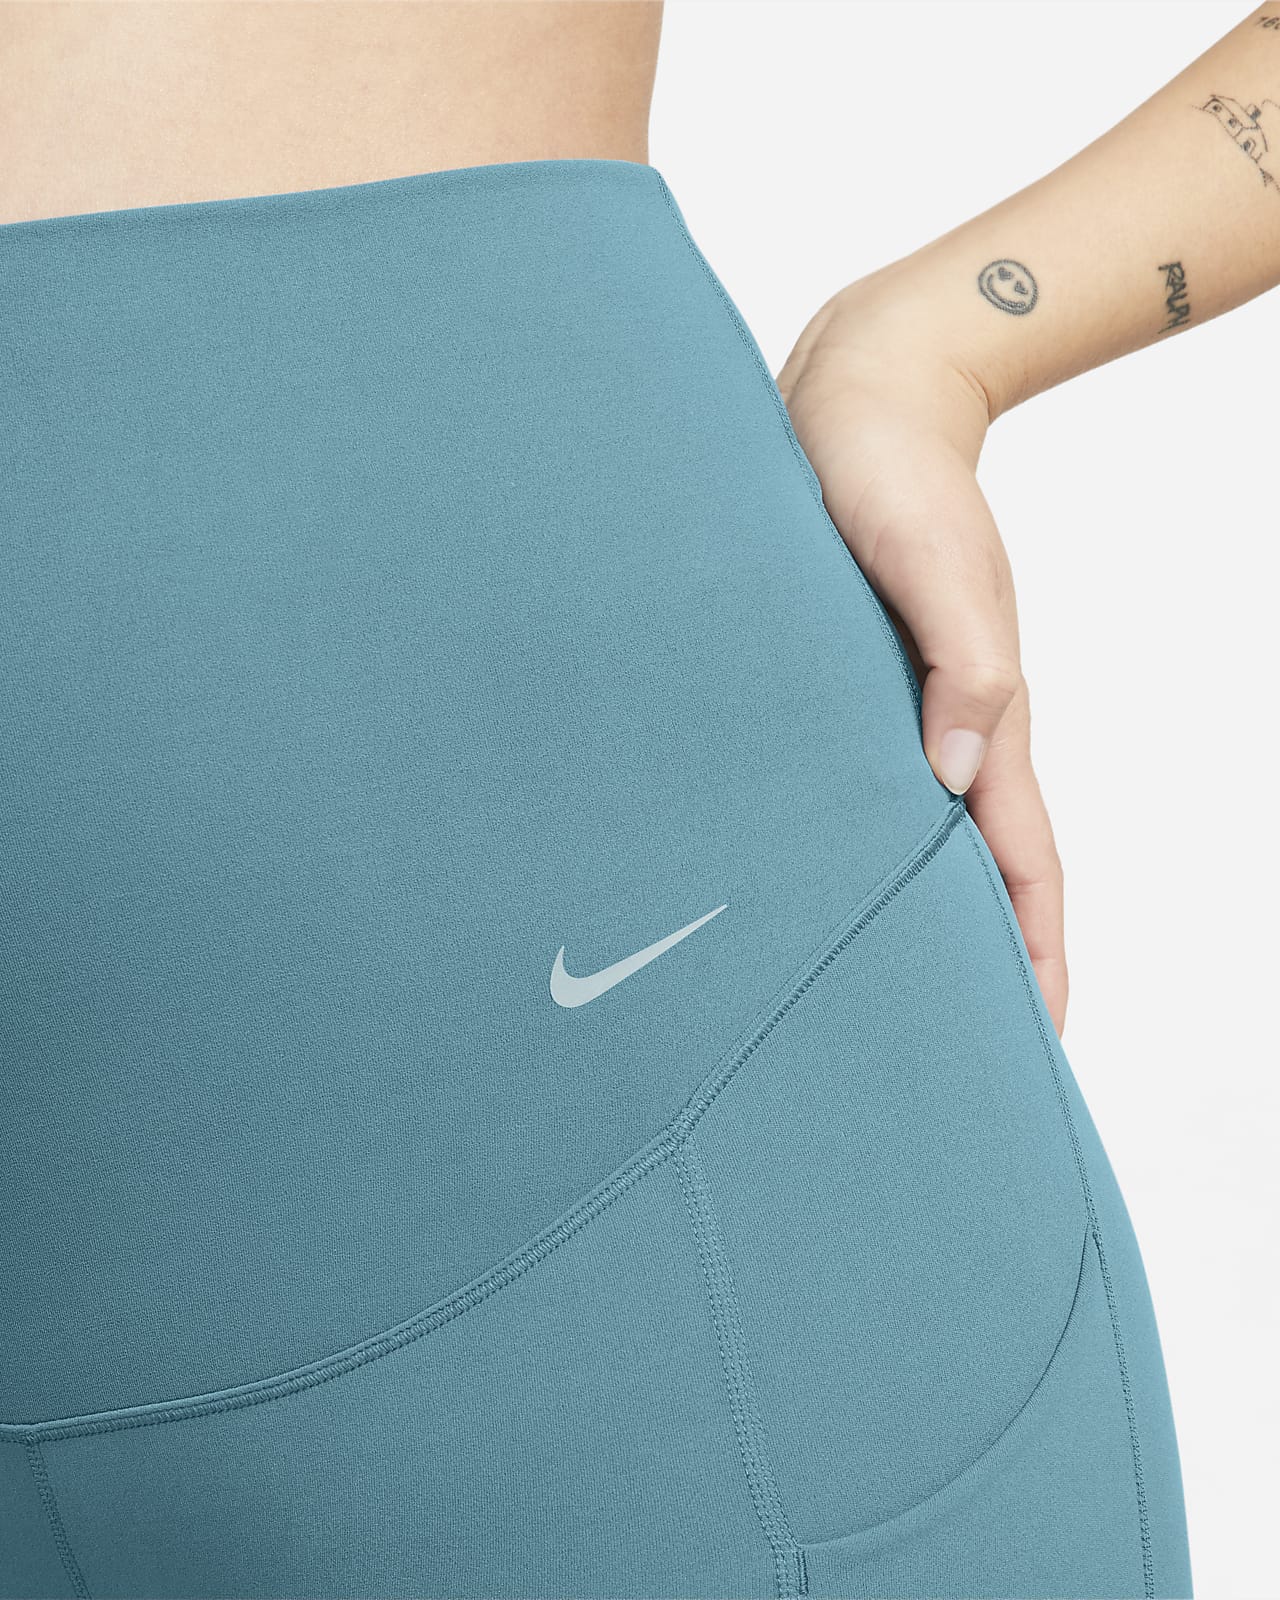 Women's S Small ~ Nike Zenvy Leggings Gentle-Support, High-Waisted, 7/8  Length